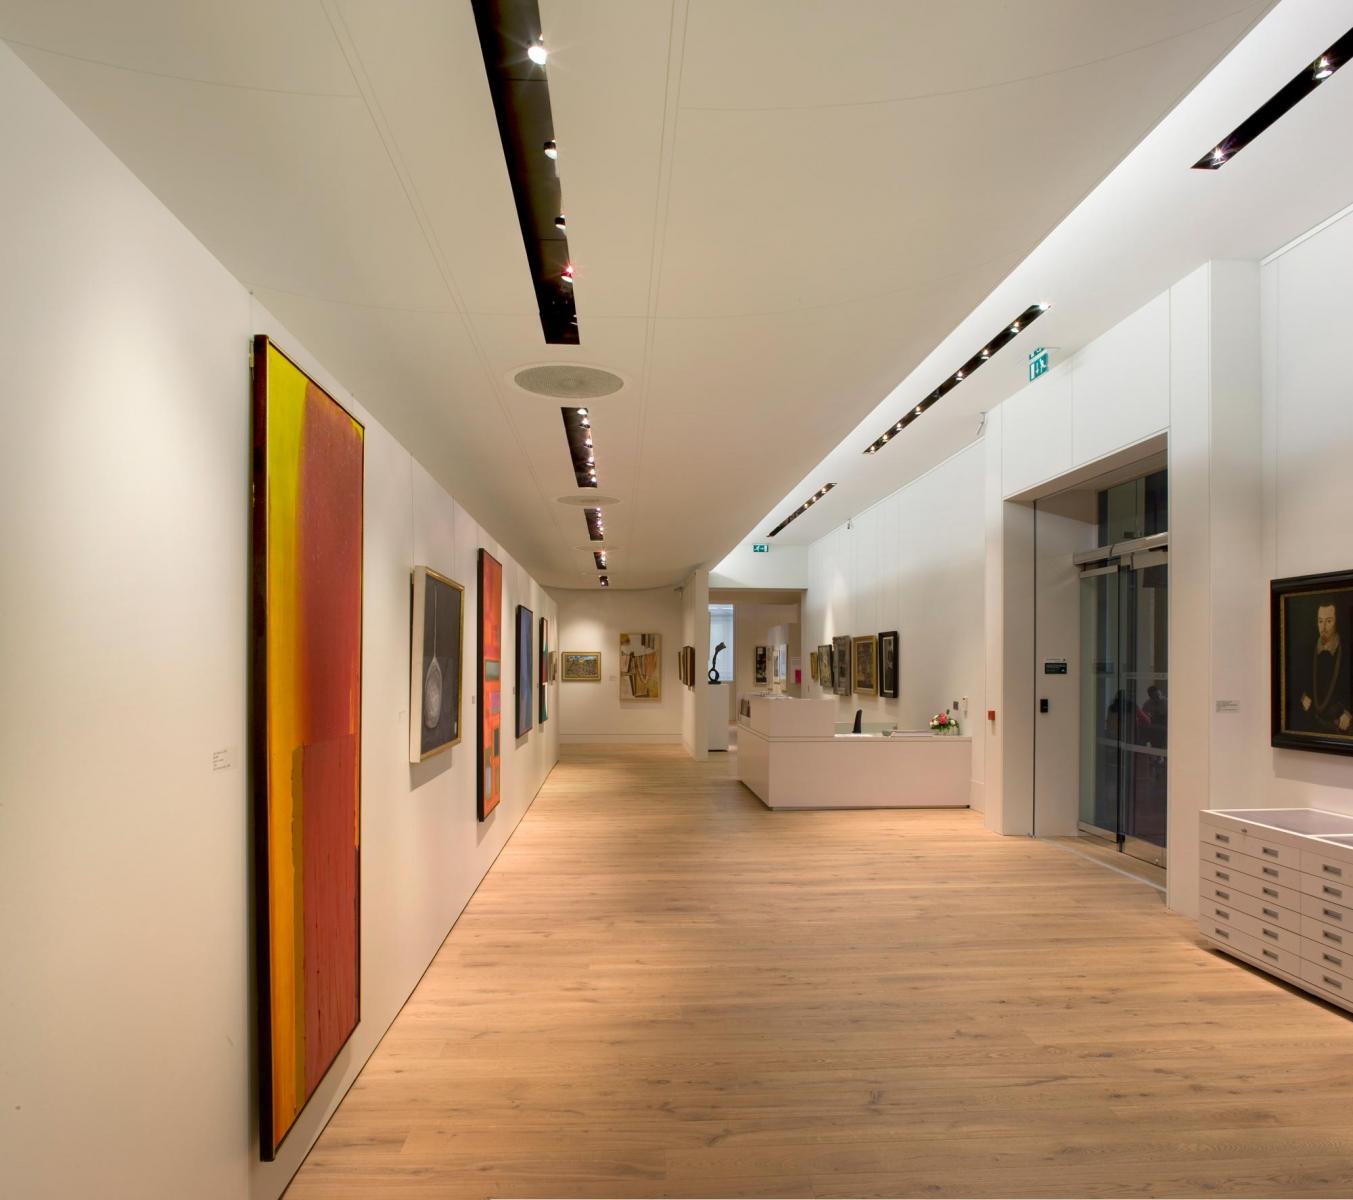 Leeds University Art Gallery, Leeds - Interior view